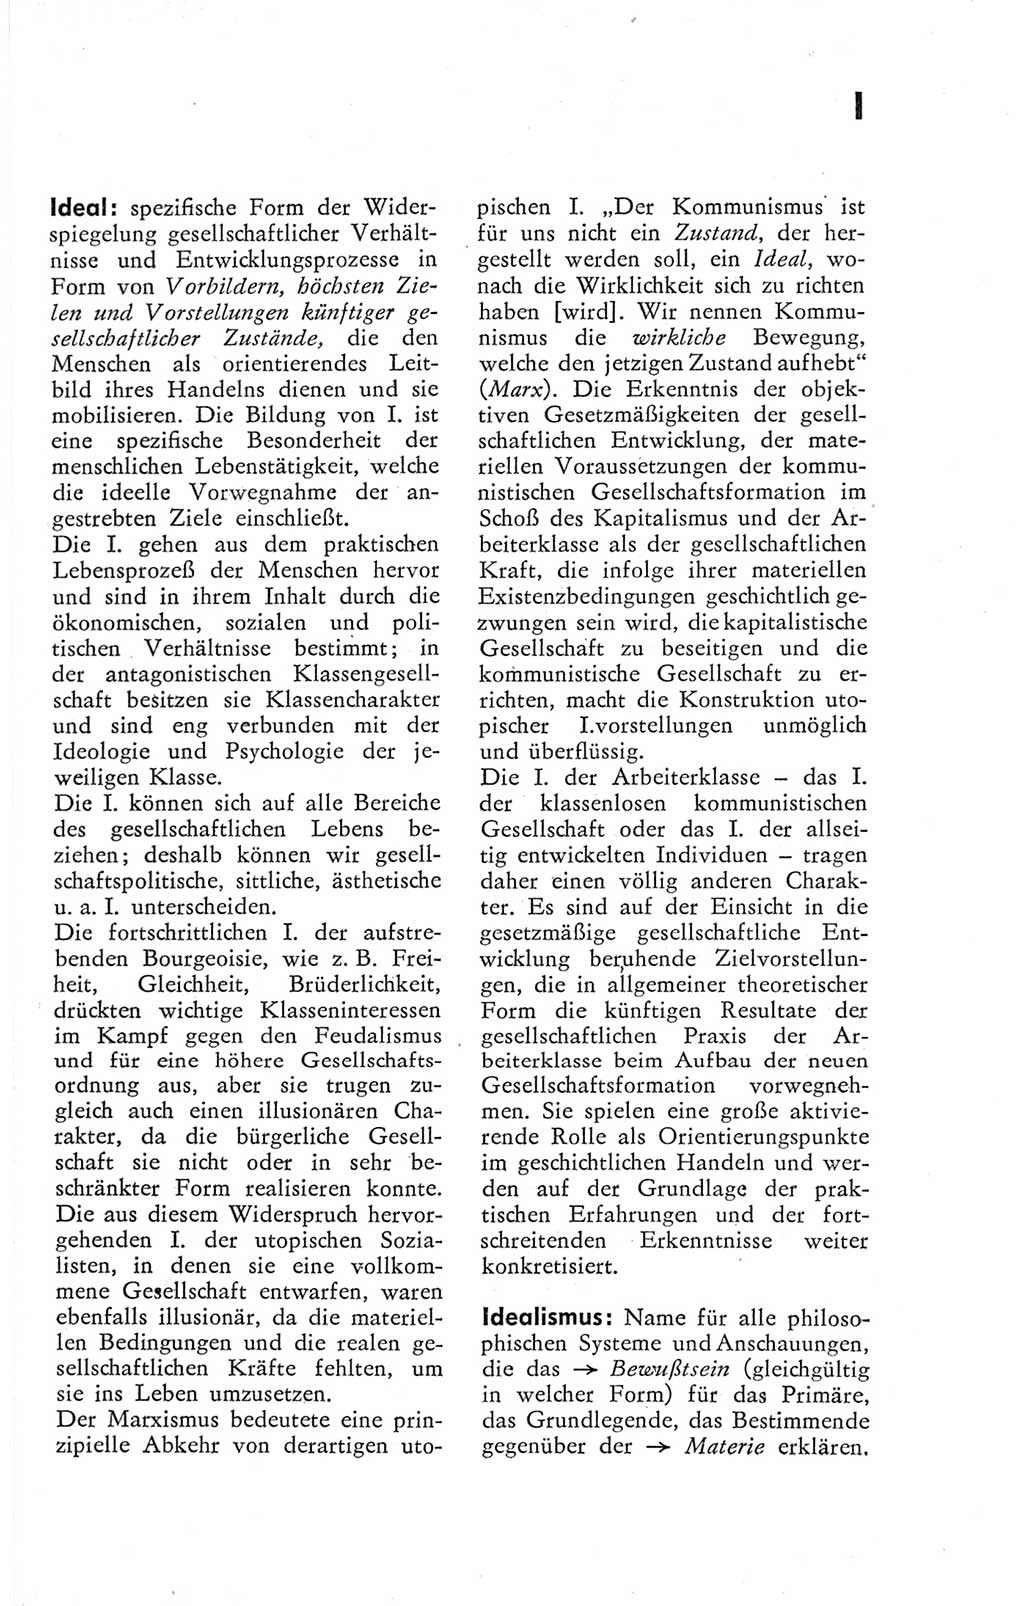 Kleines Wörterbuch der marxistisch-leninistischen Philosophie [Deutsche Demokratische Republik (DDR)] 1974, Seite 135 (Kl. Wb. ML Phil. DDR 1974, S. 135)